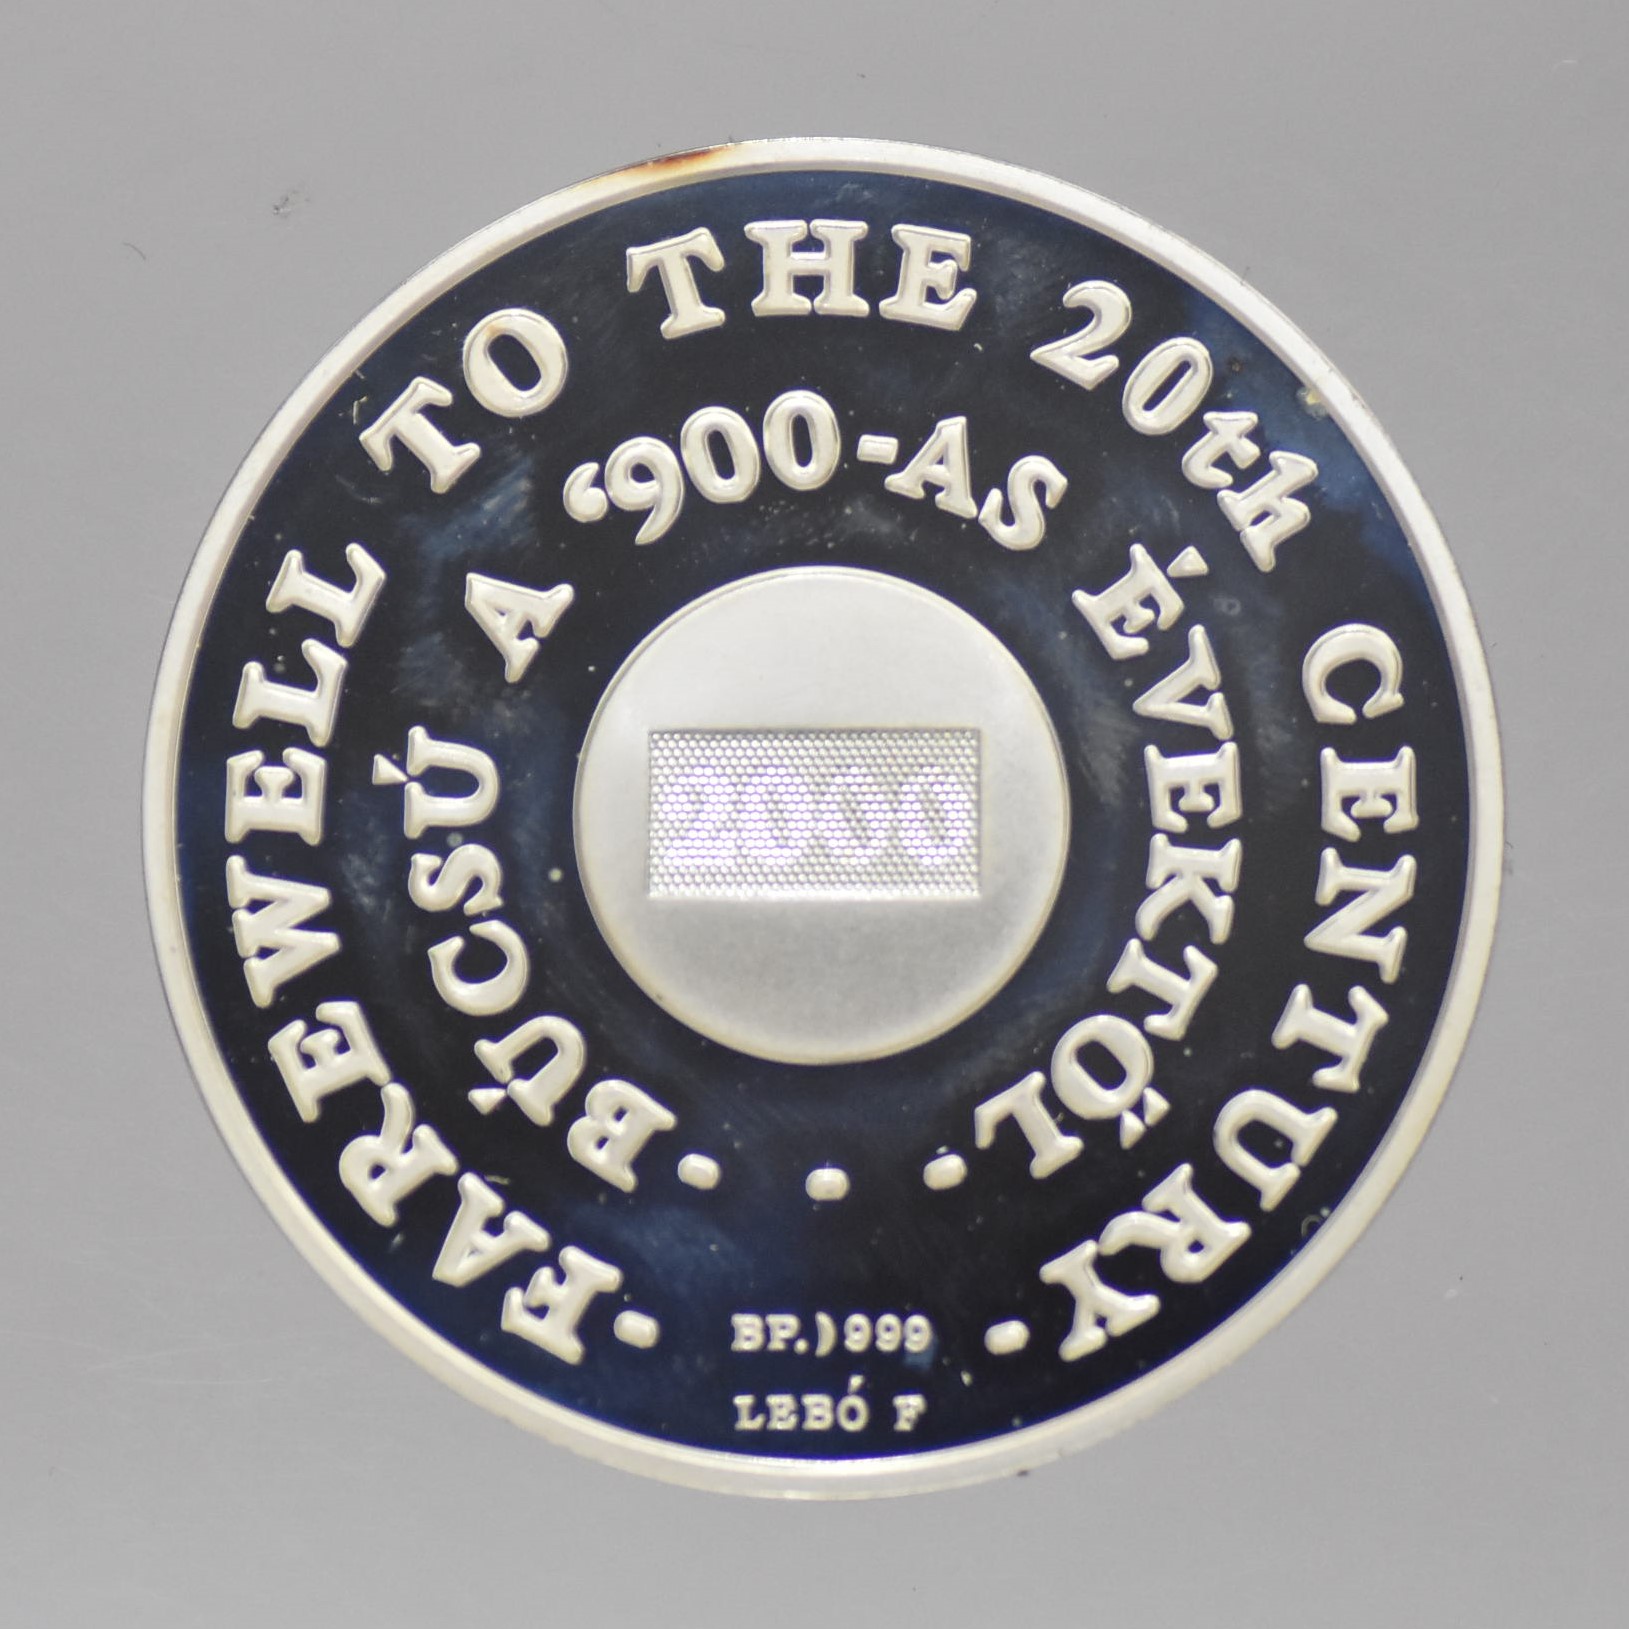 2000 MKB - Millennium színezüst érem